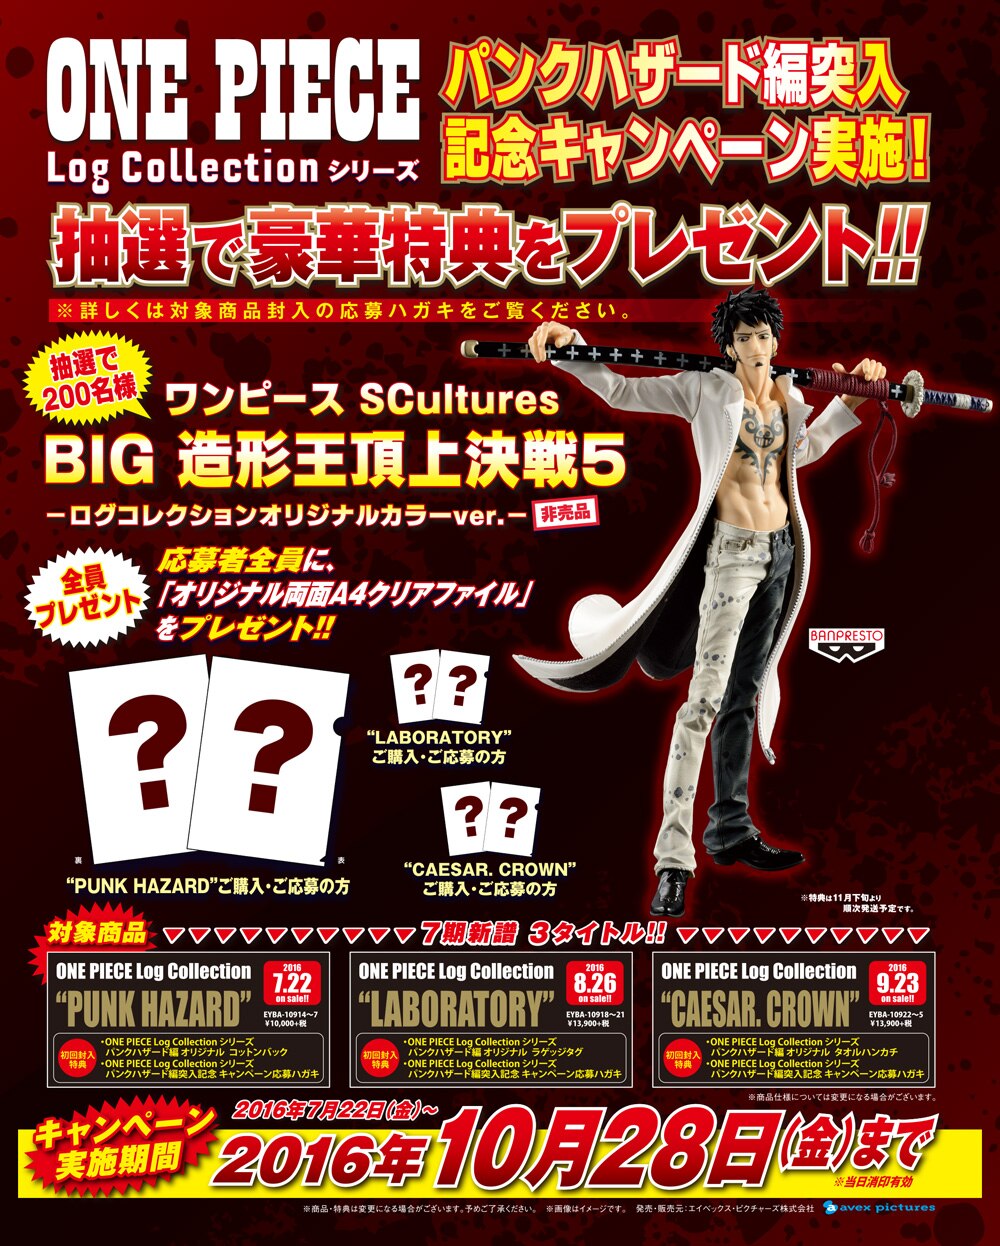 Log Collection シリーズ パンクハザード編 突入記念キャンペーン特典情報 News One Piece ワンピース Dvd公式サイト